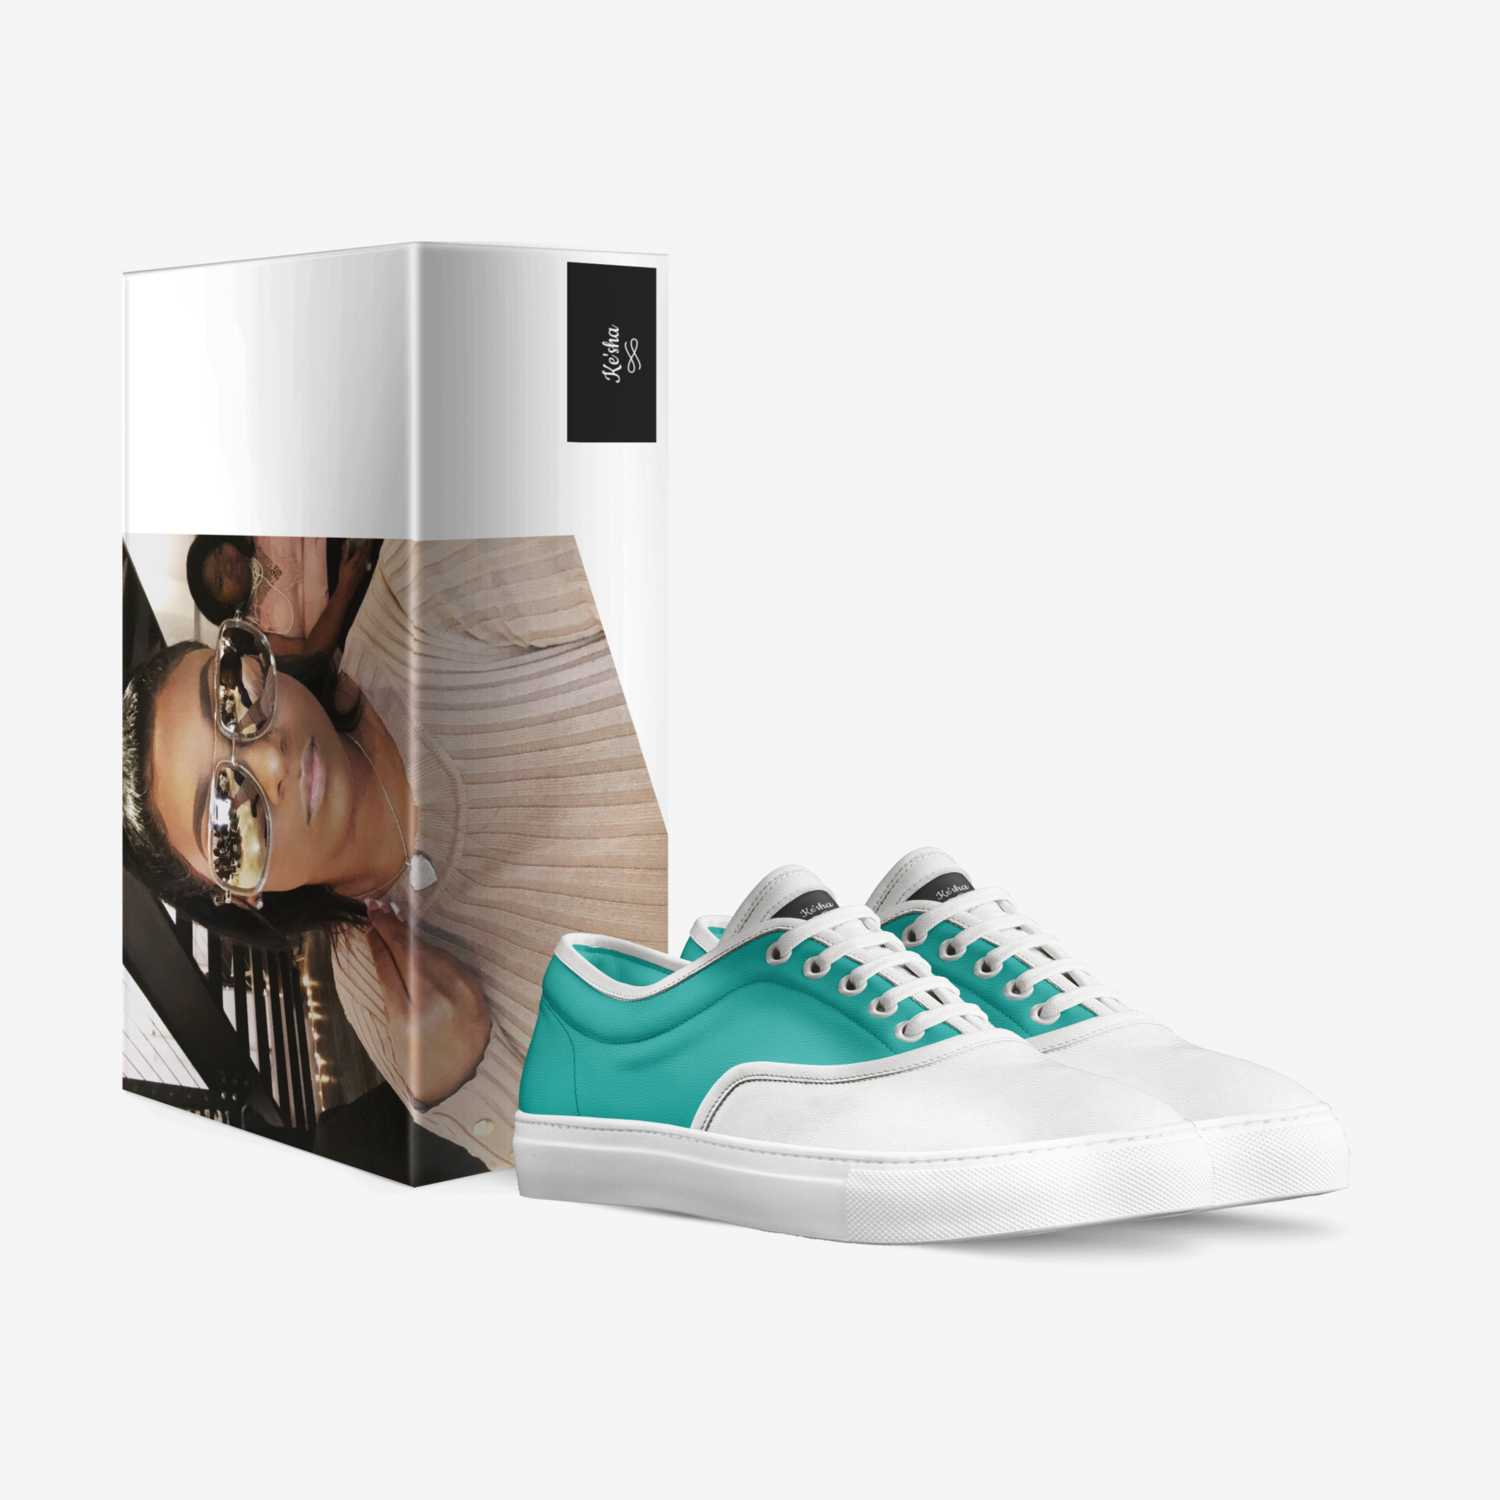 Ke'sha custom made in Italy shoes by Latoya | Box view